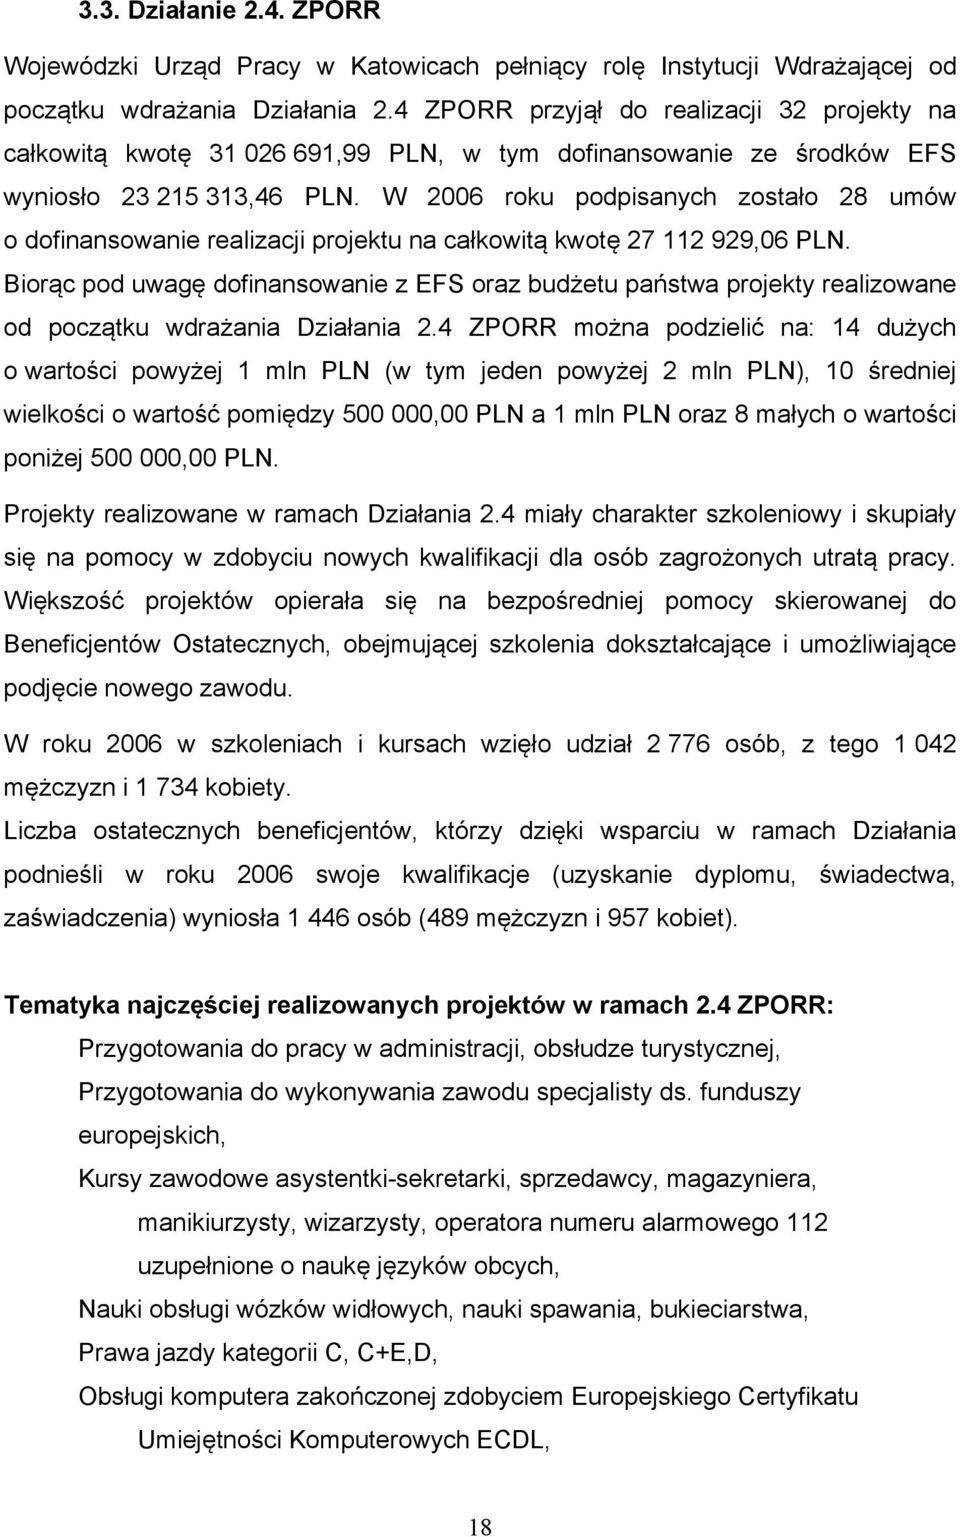 W 2006 roku podpisanych zostało 28 umów o dofinansowanie realizacji projektu na całkowitą kwotę 27 112 929,06 PLN.